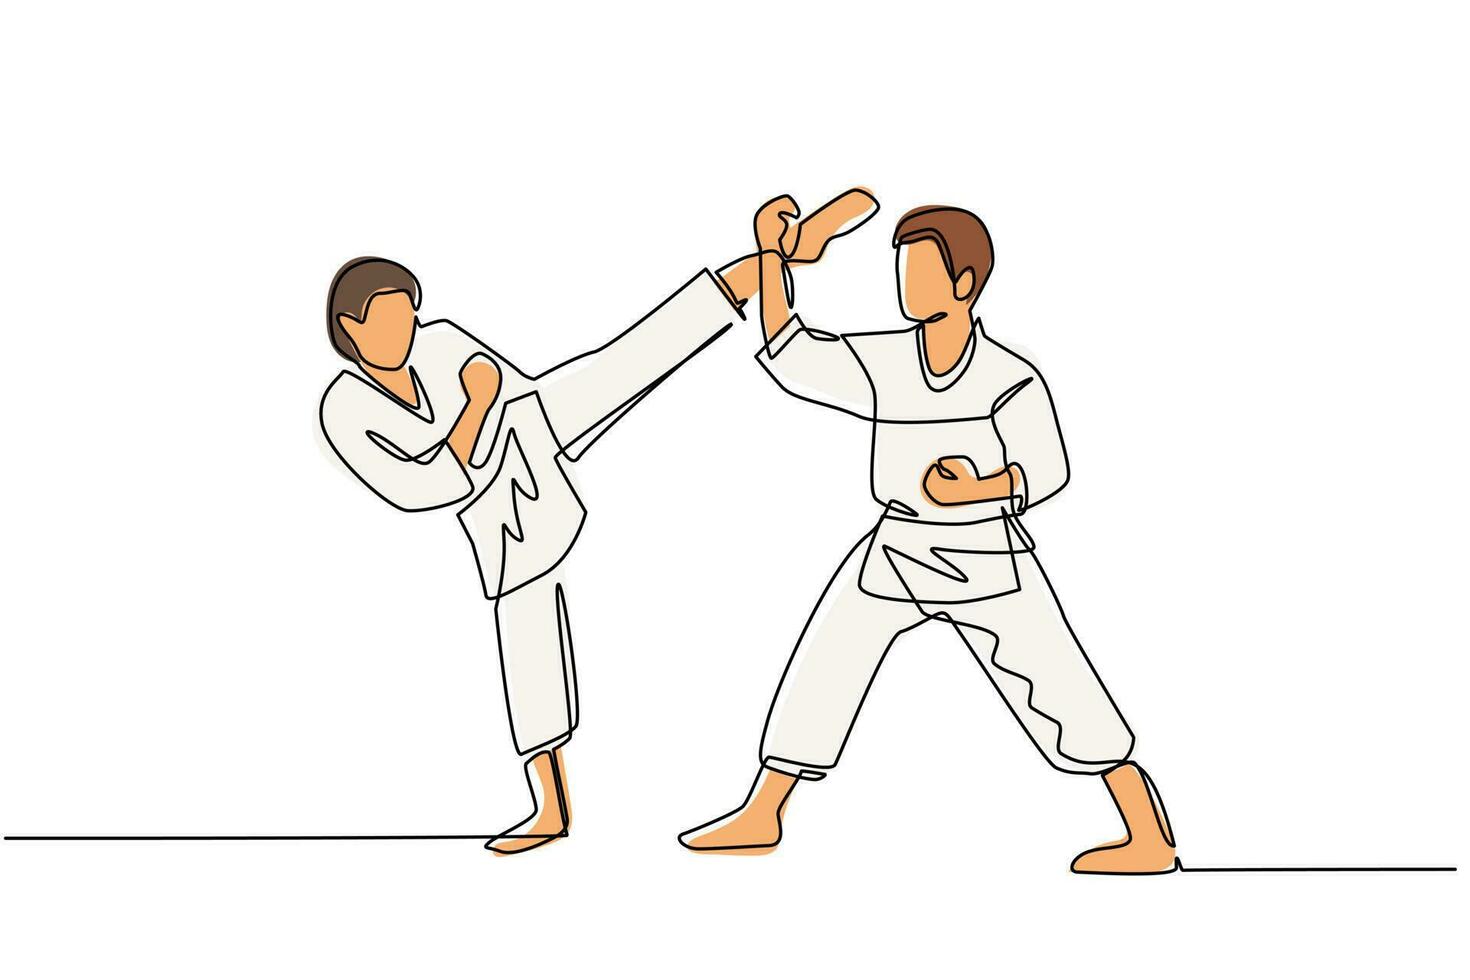 continu één lijntekening twee karate mannen vechters klaar om te vechten. professionele karatesportvechters die staan te vechten om samen karate te beoefenen. enkele lijn tekenen ontwerp vector grafische afbeelding